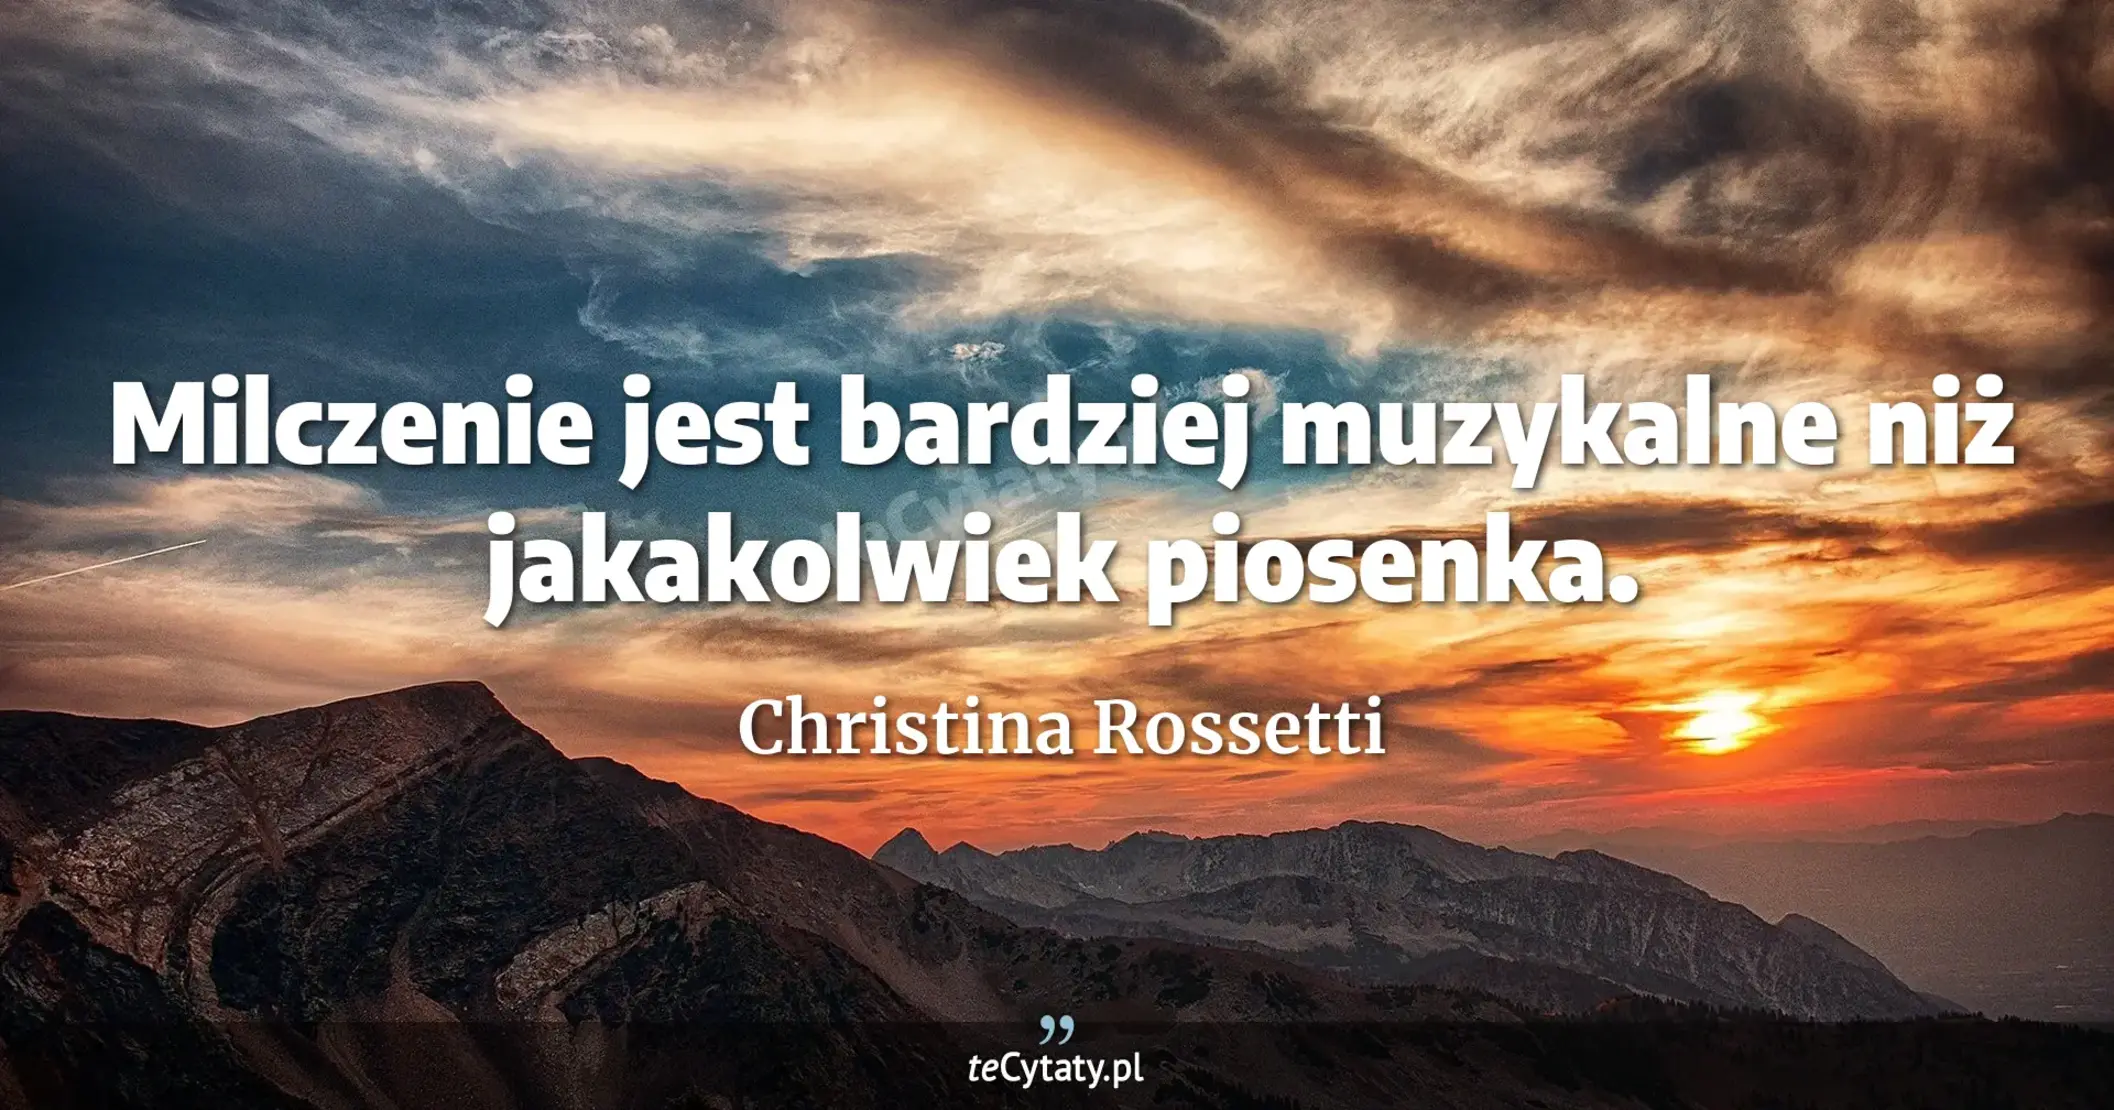 Milczenie jest bardziej muzykalne niż jakakolwiek piosenka. - Christina Rossetti